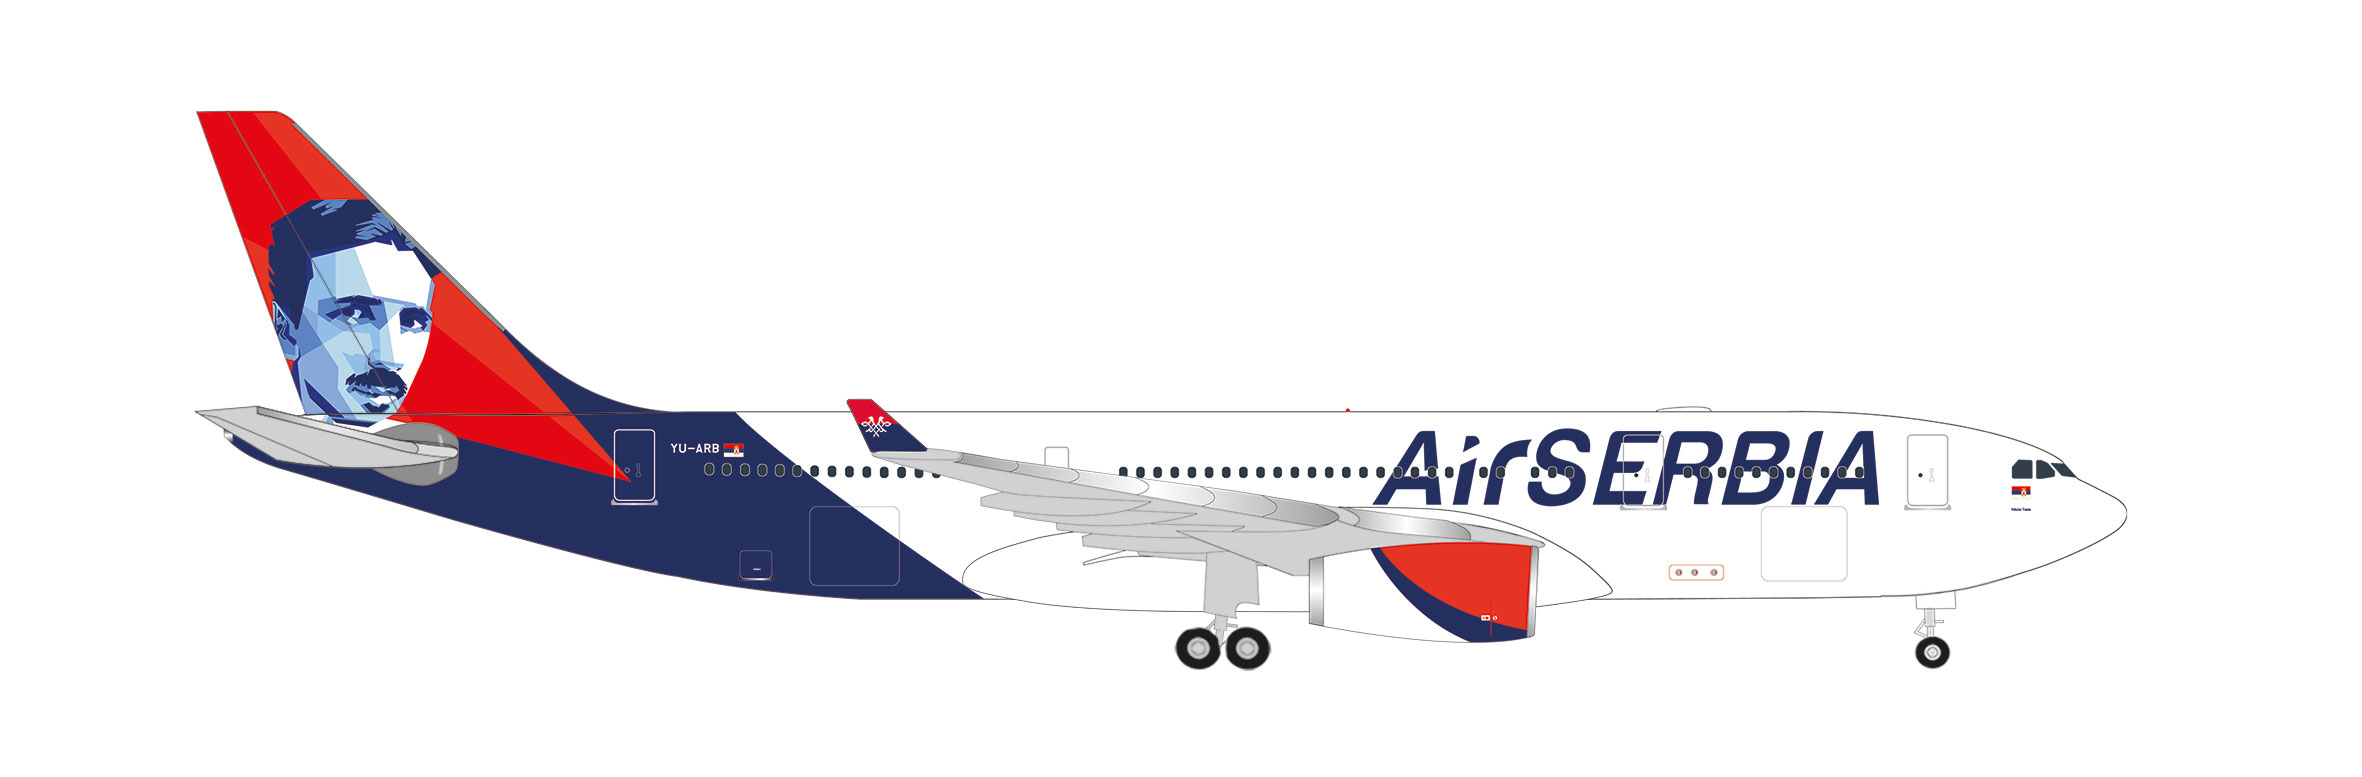 Air Serbia Airbus A330-200 